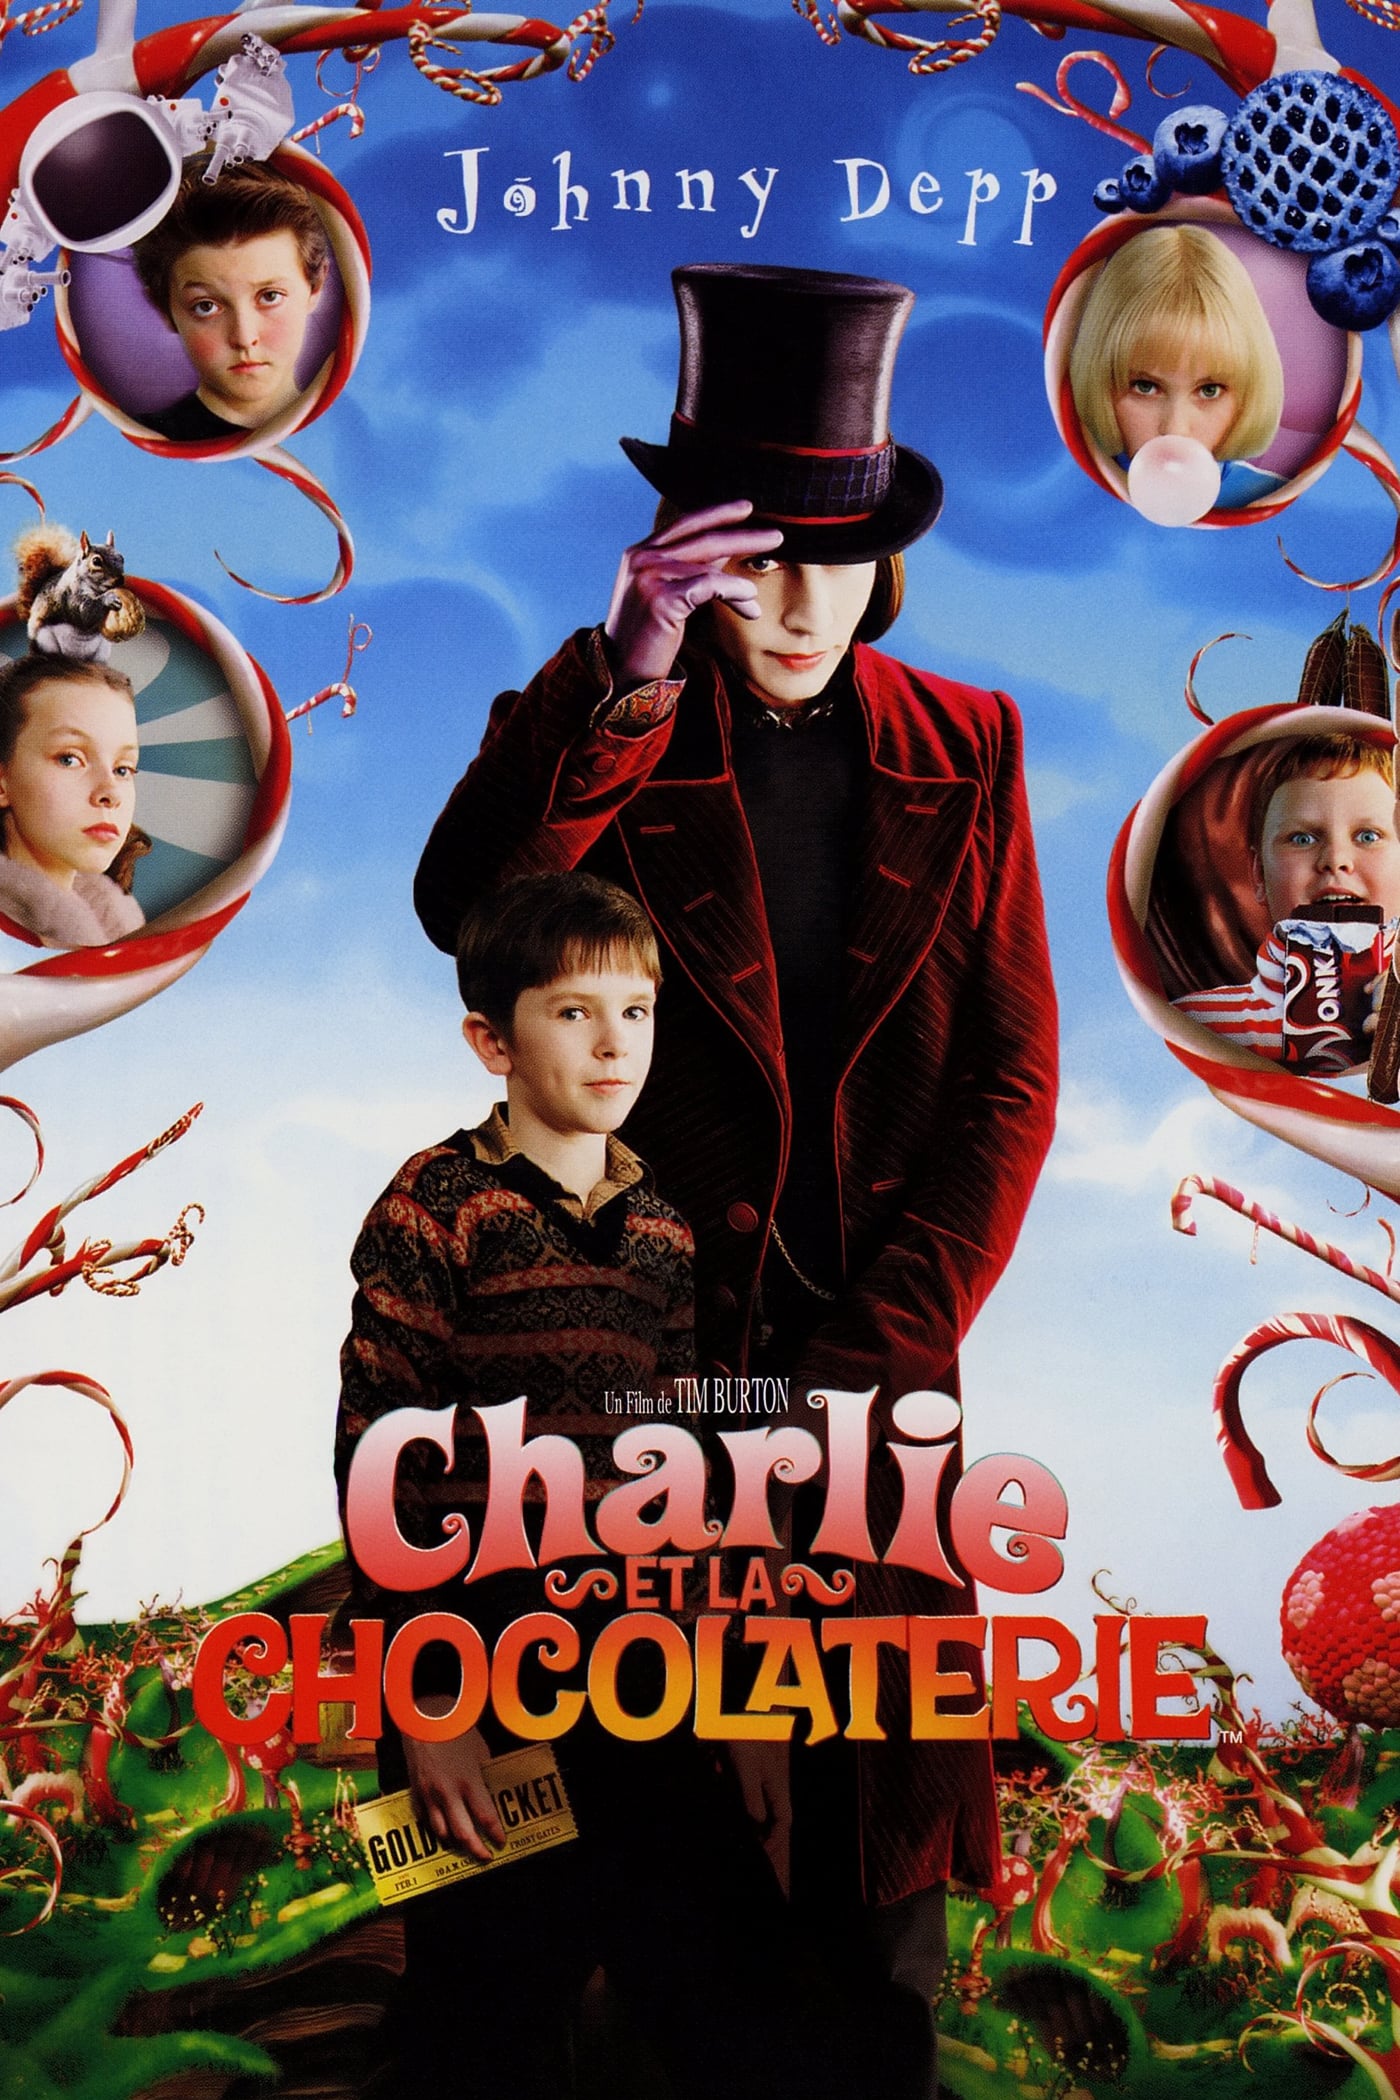 Affiche du film "Charlie et la chocolaterie"